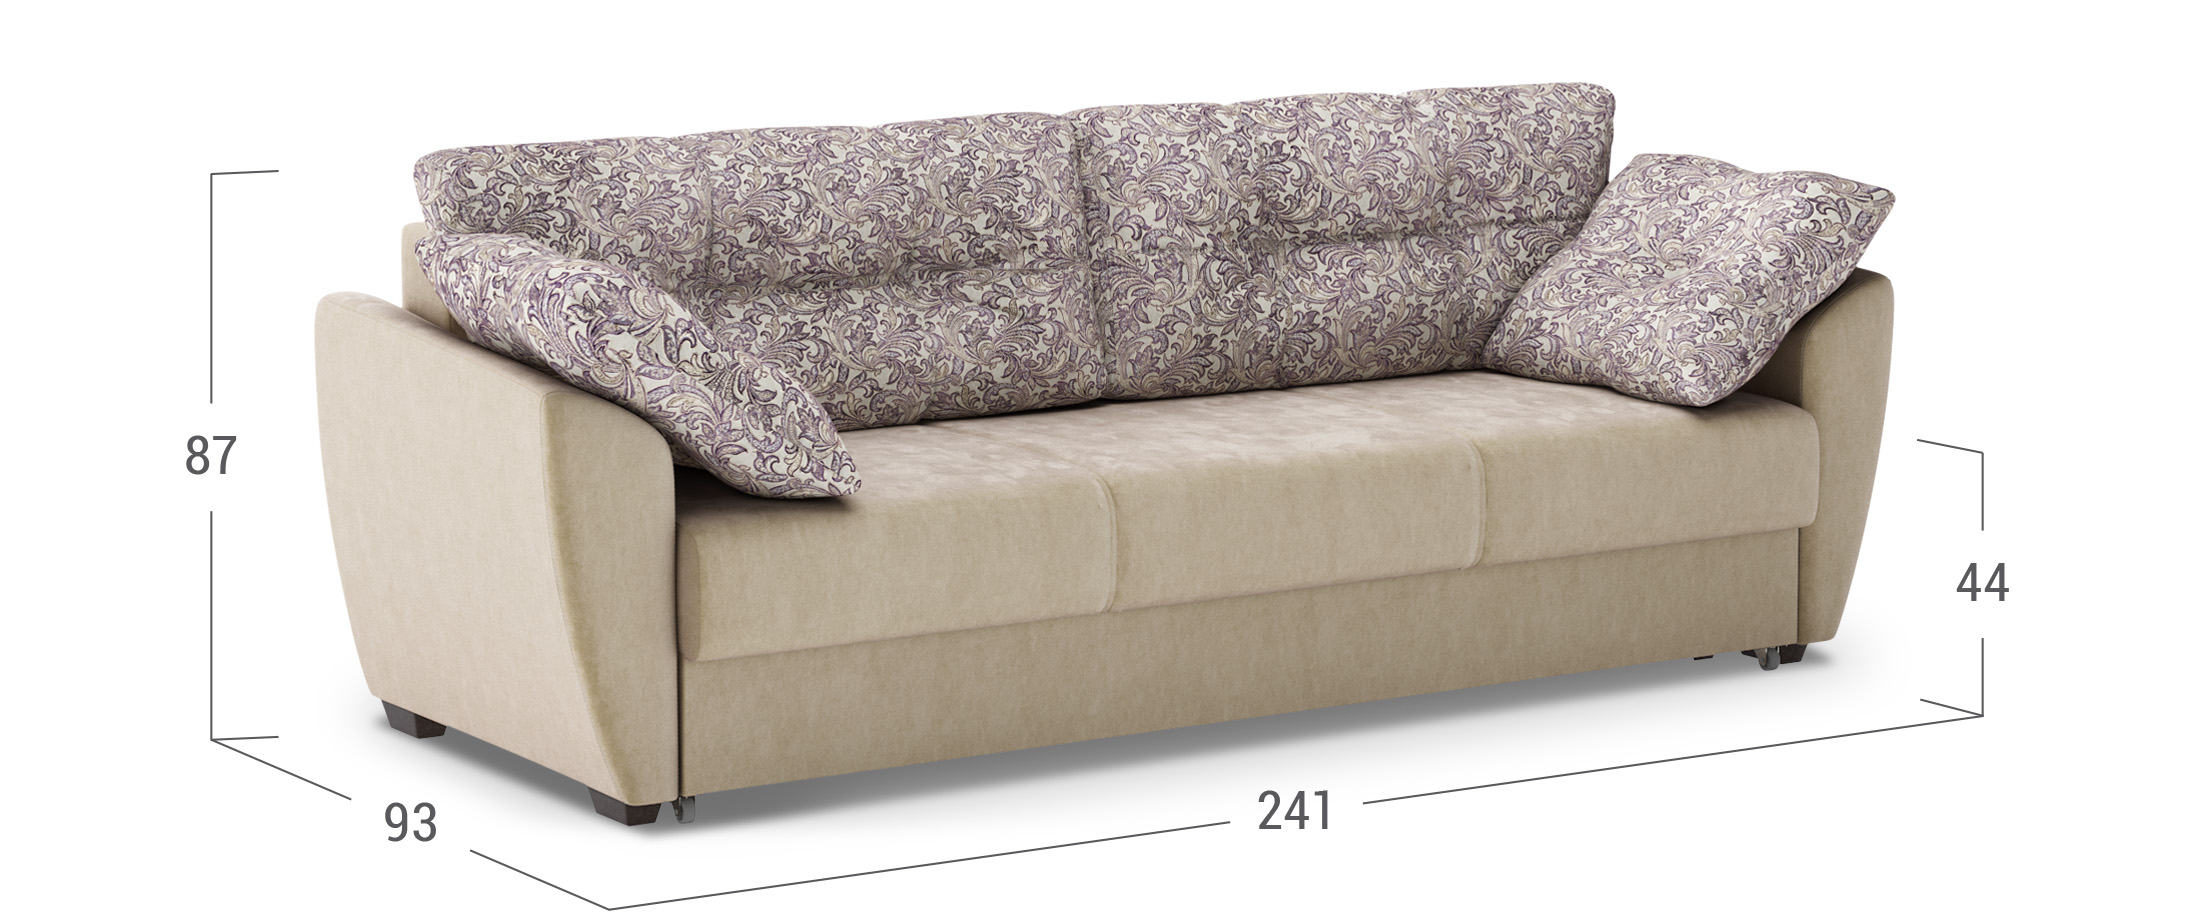 Деревянный диван с матрасом